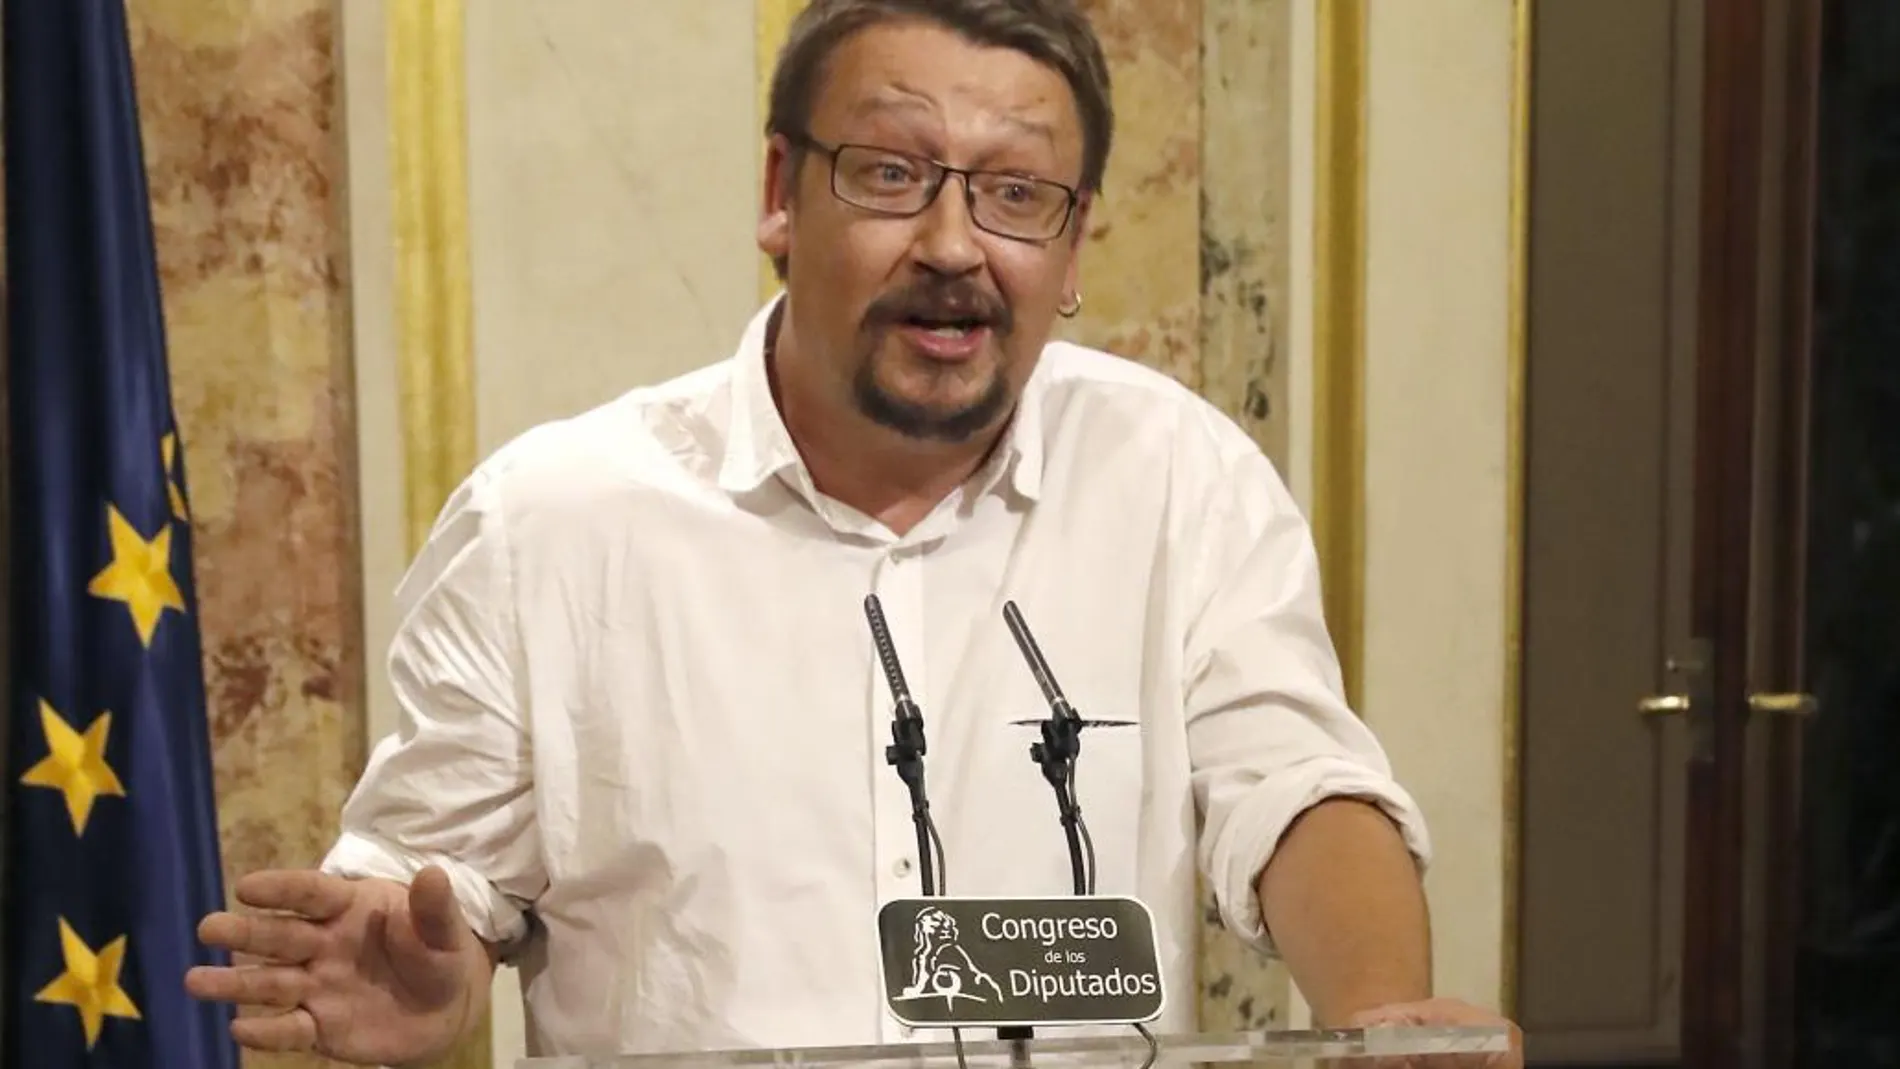 El portavoz de En Comú Podem, Xavier Doménech, comparece ante los medios de comunicación tras el discurso de Rajoy